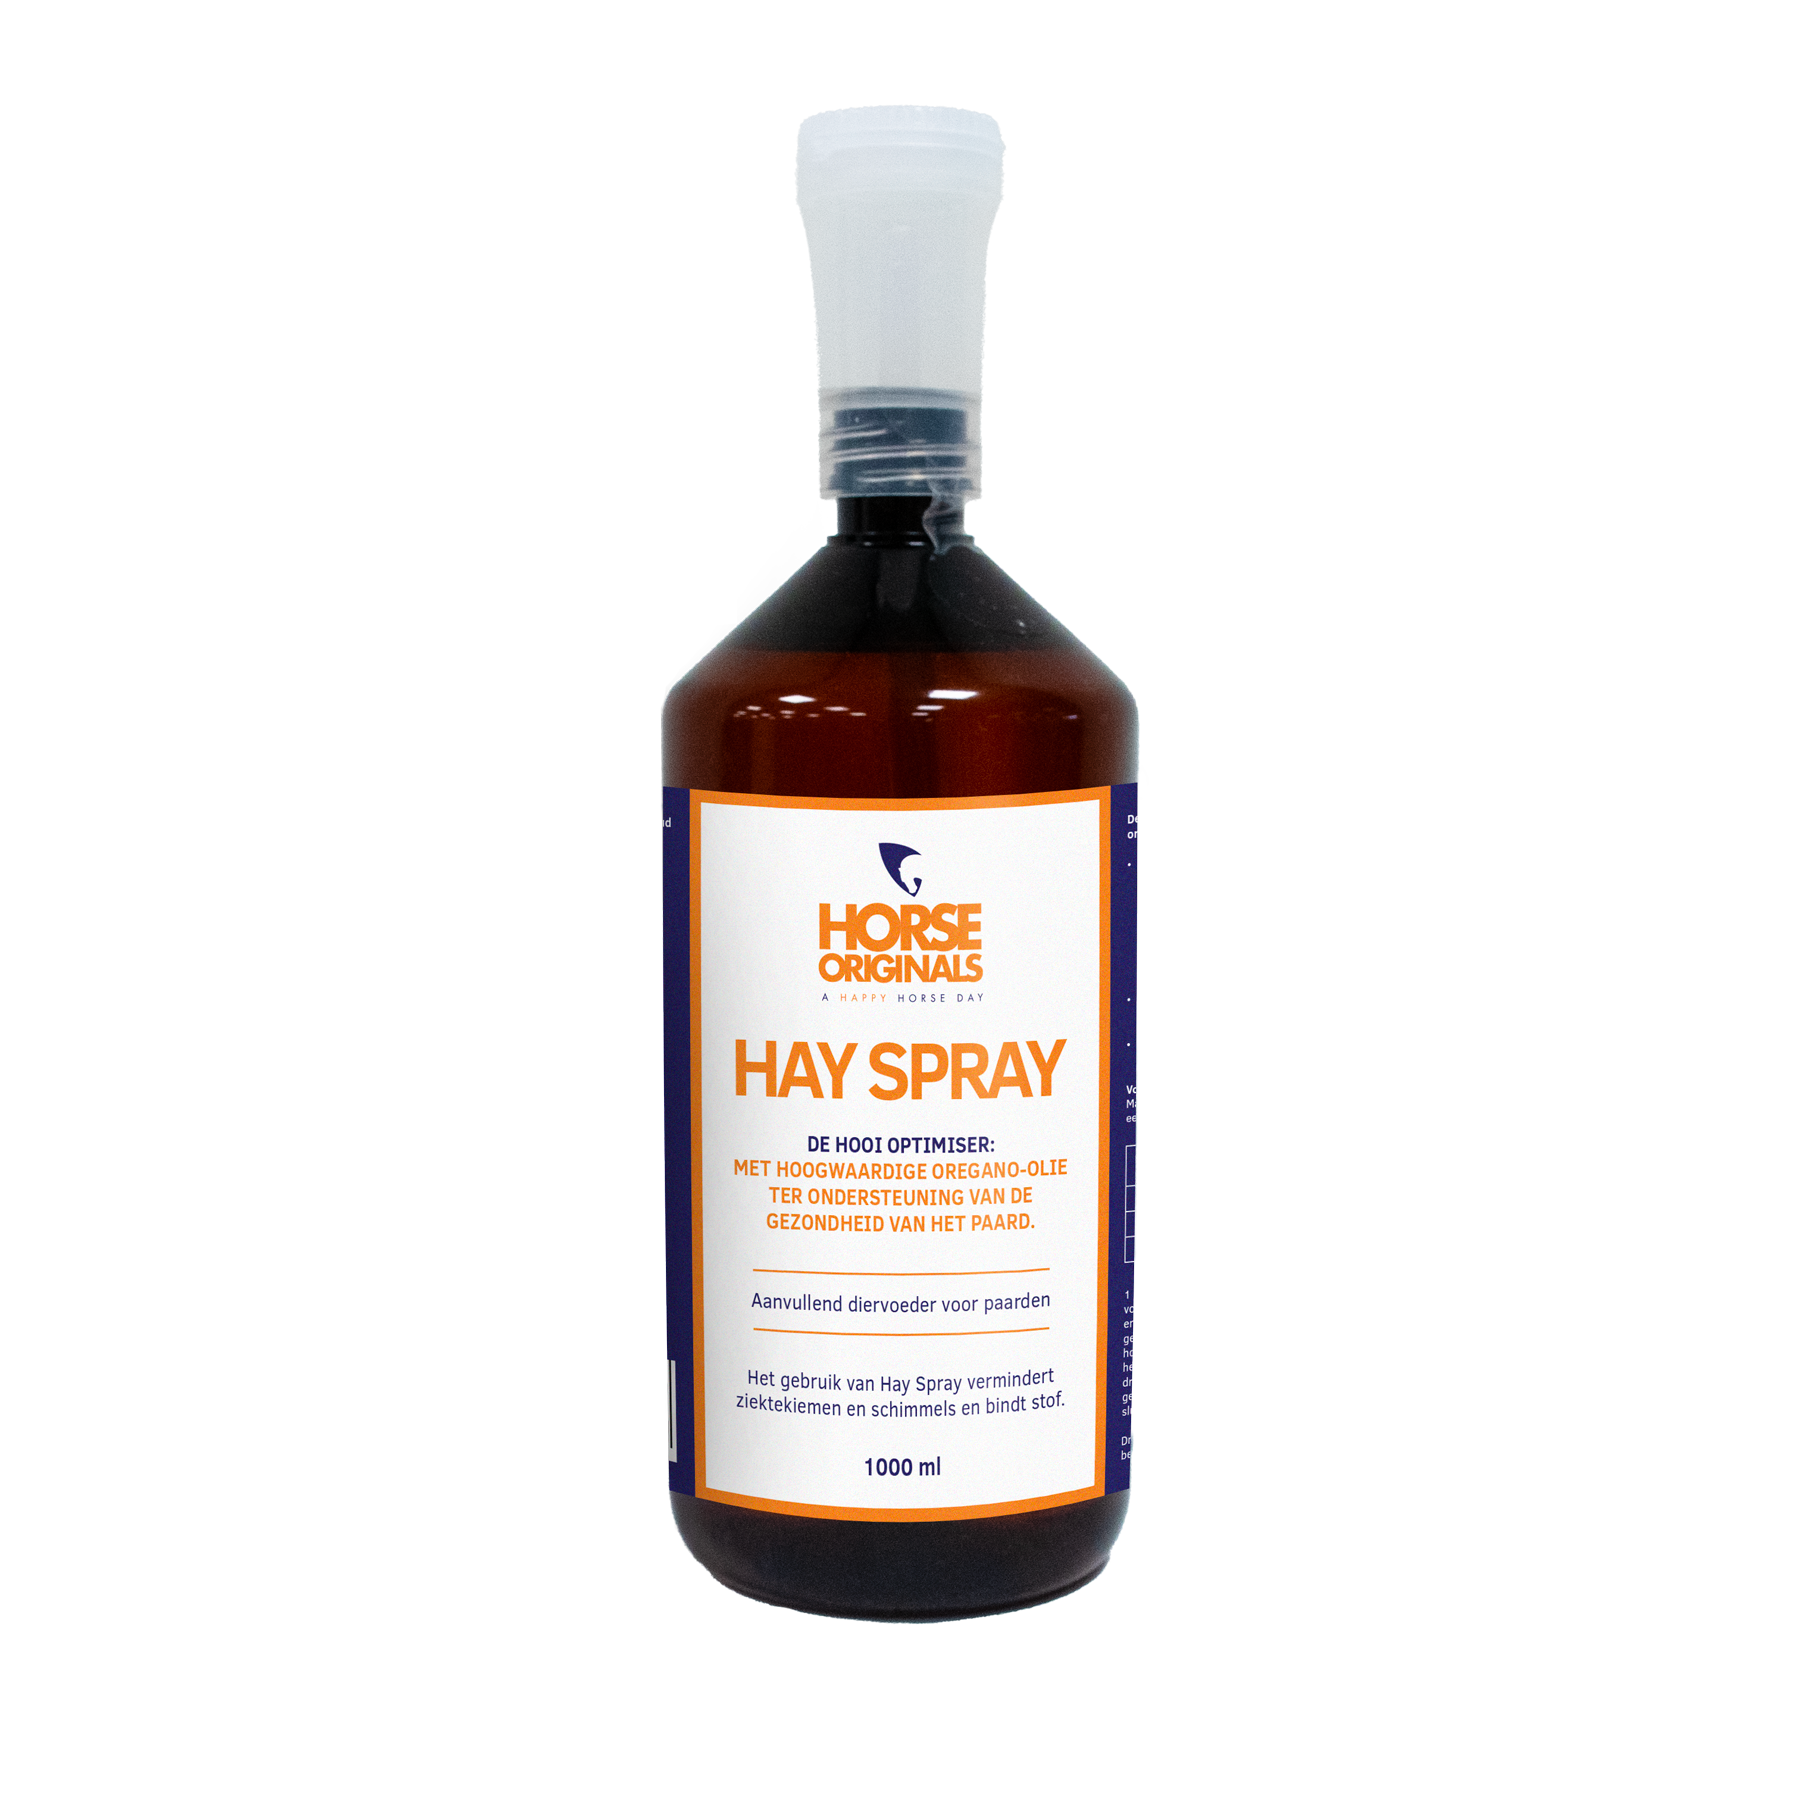 Hay Spray voor paarden met luchtwegproblemen